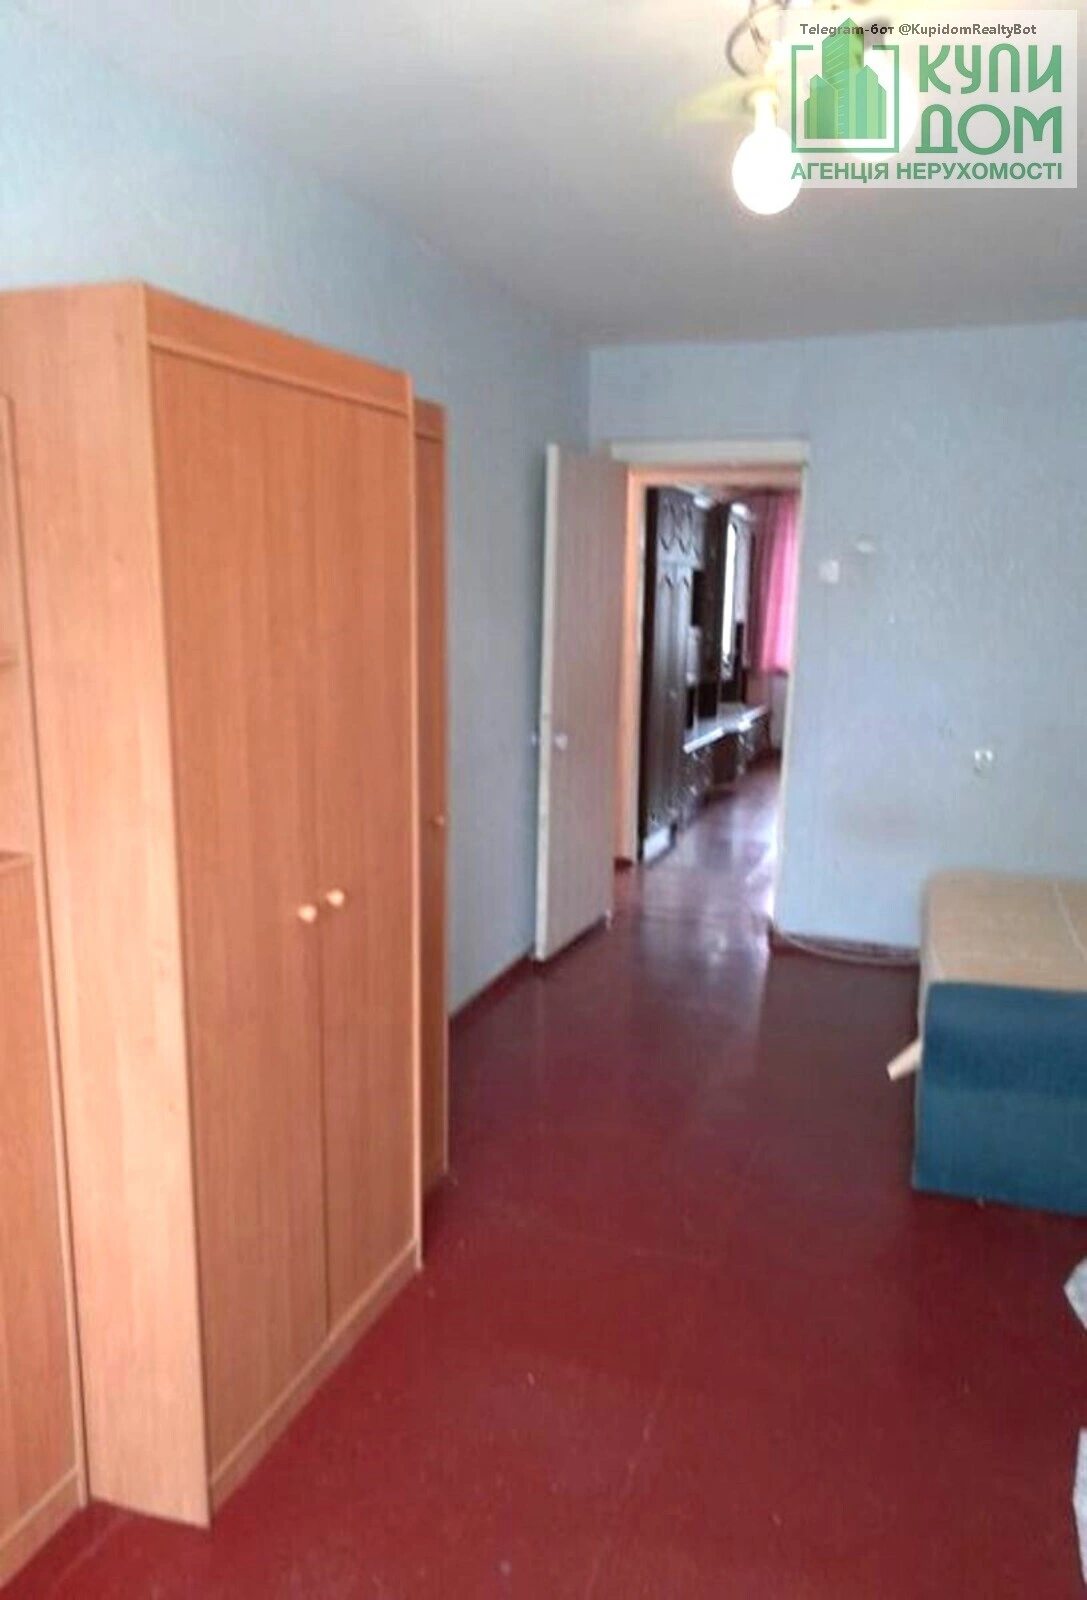 Apartments for sale. 2 rooms, 46 m², 2nd floor/5 floors. Kuropyatnykova vul., Kropyvnytskyy. 